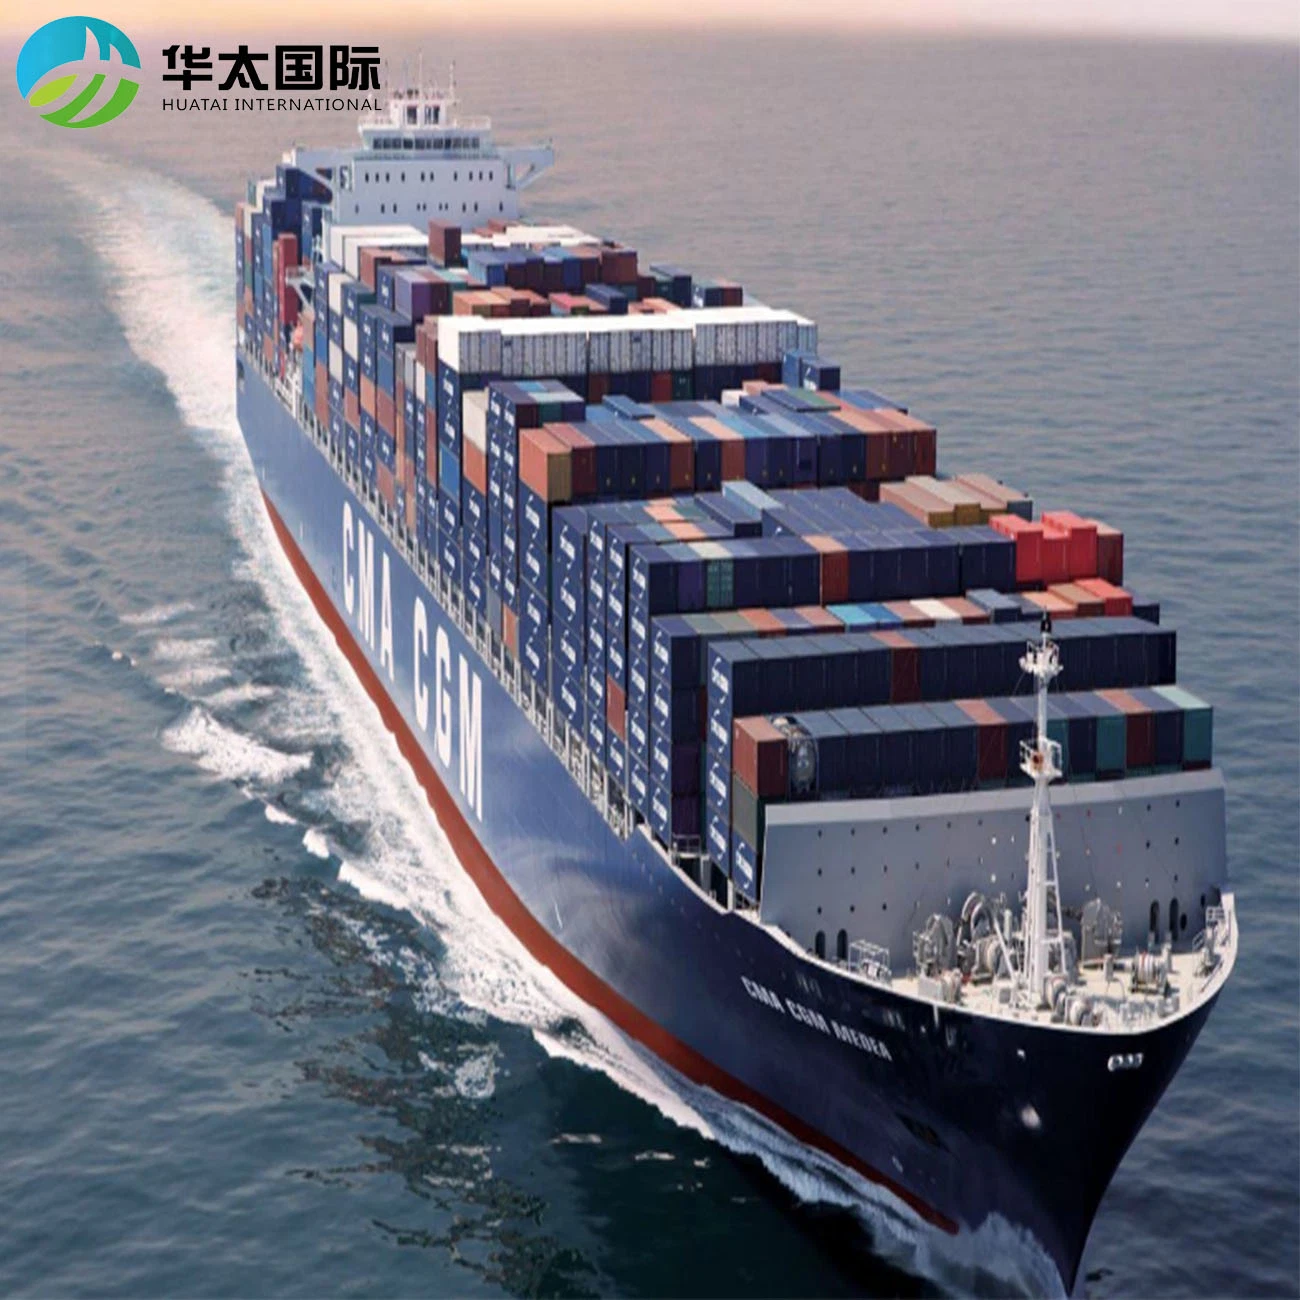 الشحن البحري للشحن البحري في البحر شركة China إلى تايلاند الدولية اللوجستيات نقل FCL/LCL